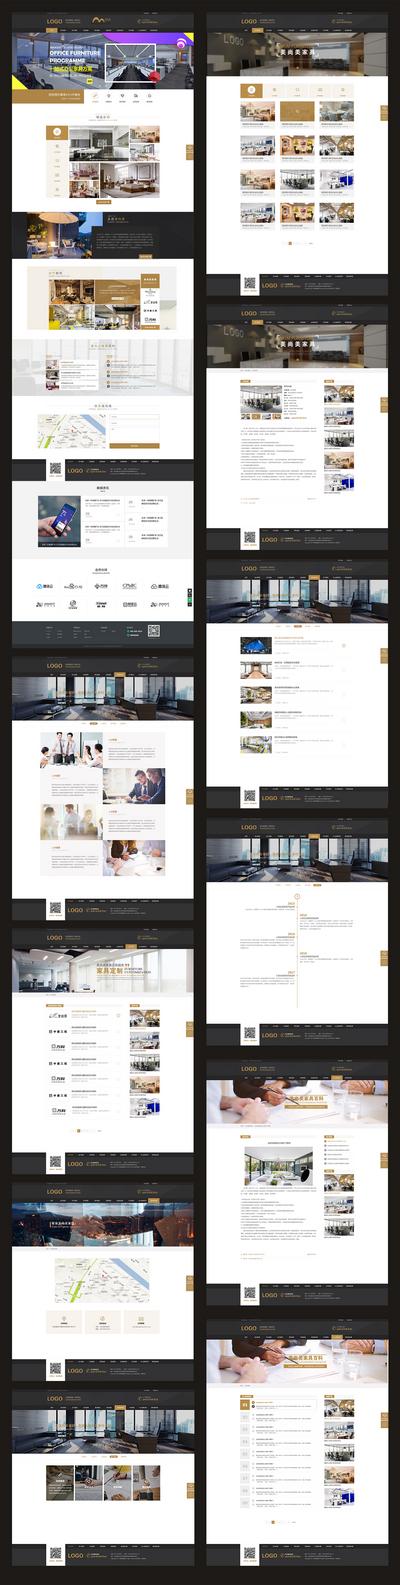 南门网 网站设计 网页设计 企业网站 公司网站 官网 家居 家具